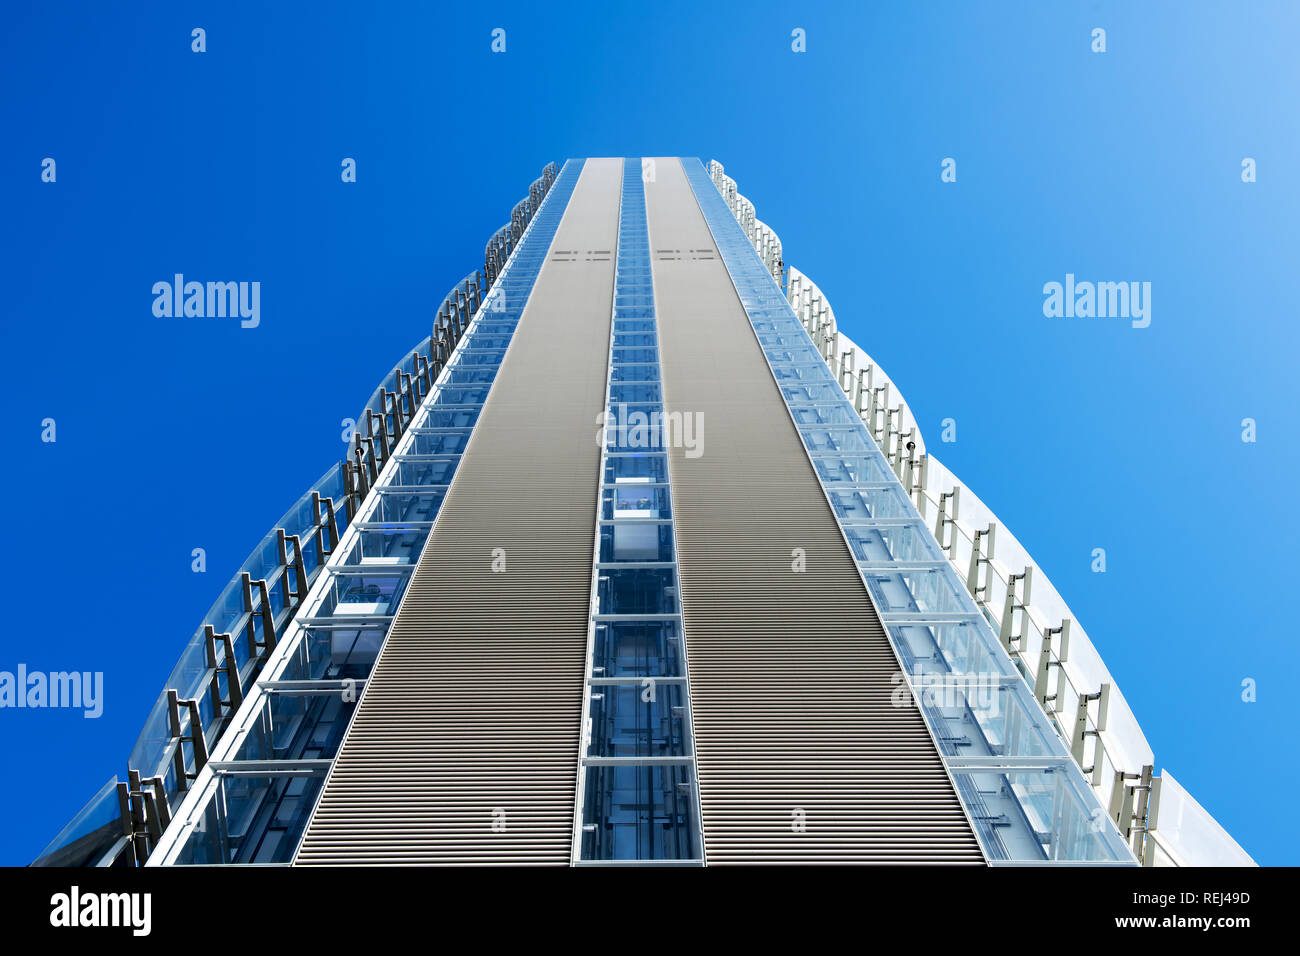 Low angle de vue d'un gratte-ciel moderne avec revêtement décoratif externe sur les murs latéraux contre un ciel bleu ensoleillé Banque D'Images